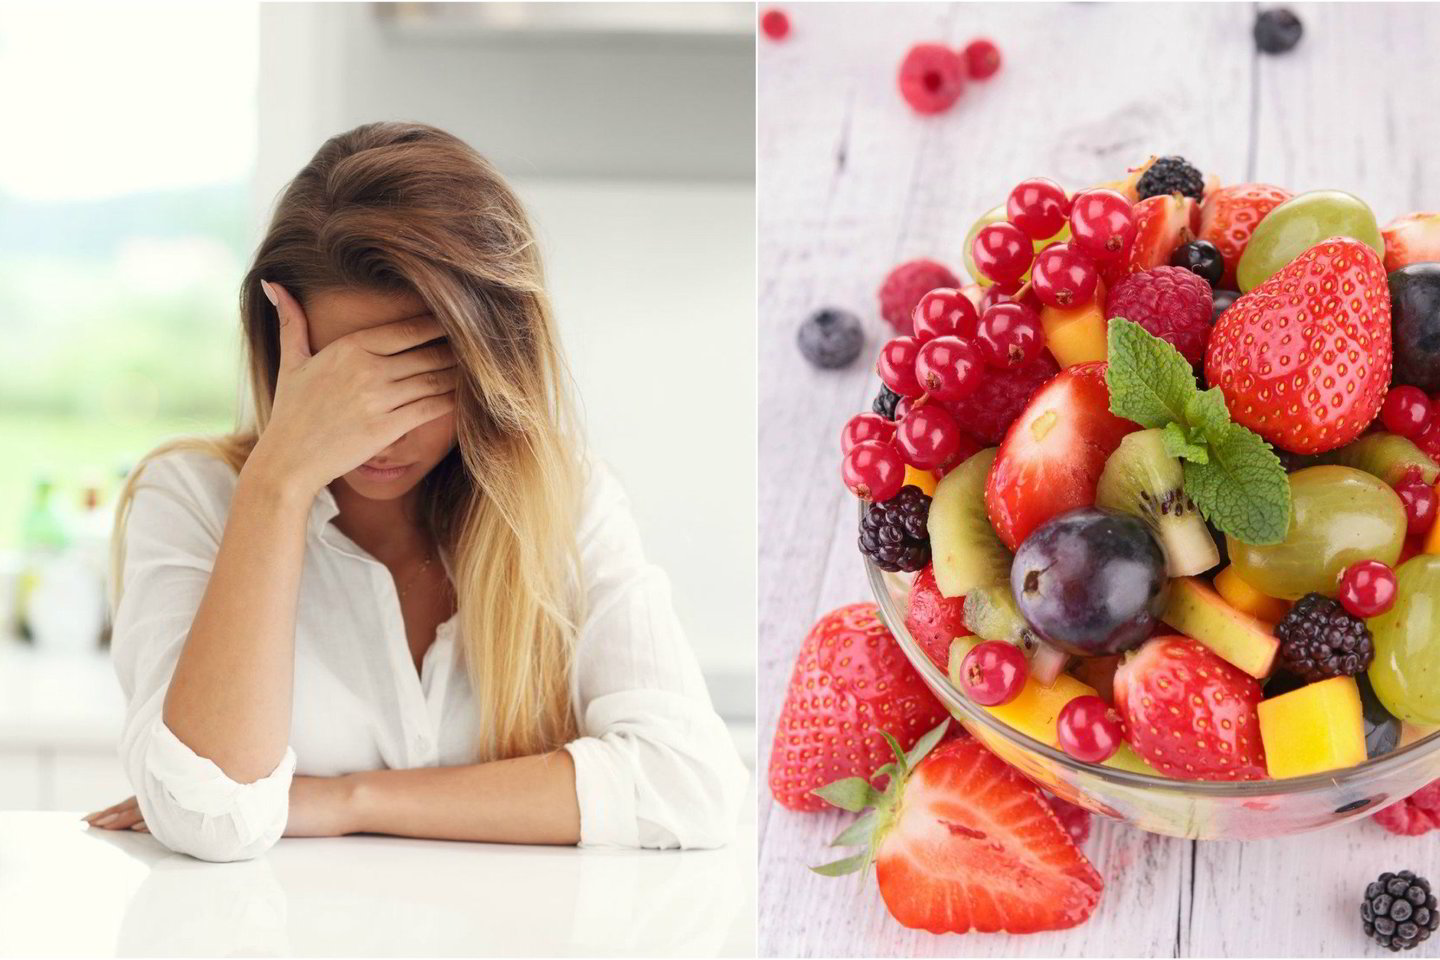  Prasidėjus menopauzei moterims derėtų maitintis liesesniais produktais, vartoti daugiau daržovių ir vaisių.<br> 123rf.com nuotr.